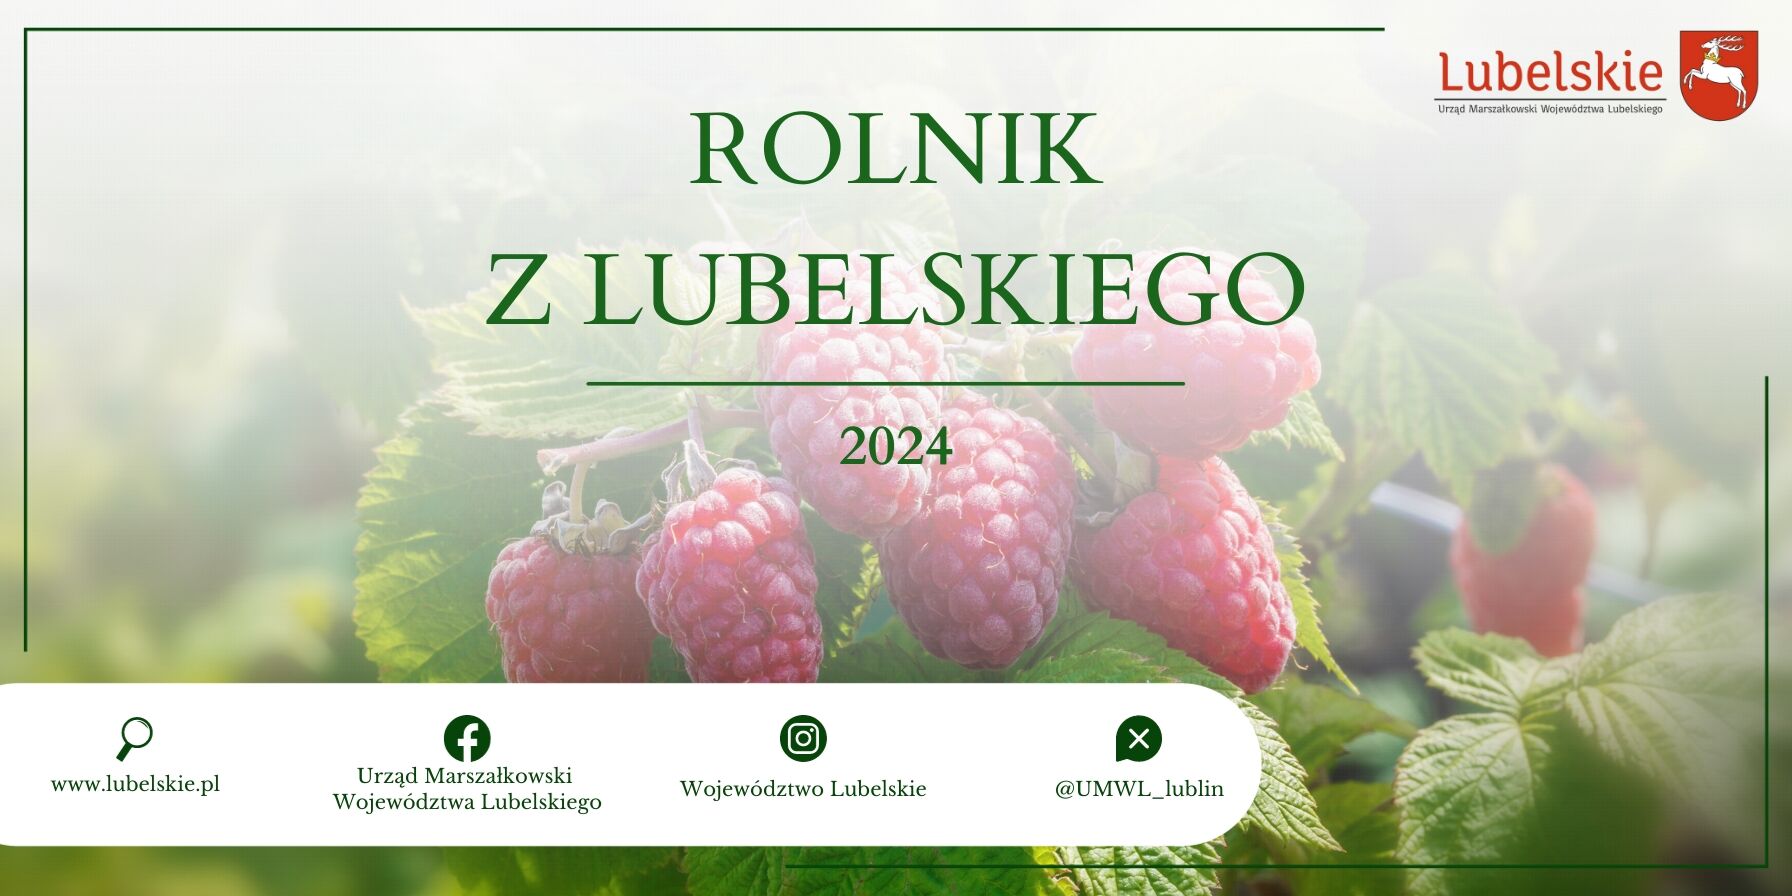 Zdjęcie promocyjne przedstawiające dojrzałe maliny na tle zielonych liści z napisem "Rolnik z Lubelskiego 2024" oraz loga instytucji.